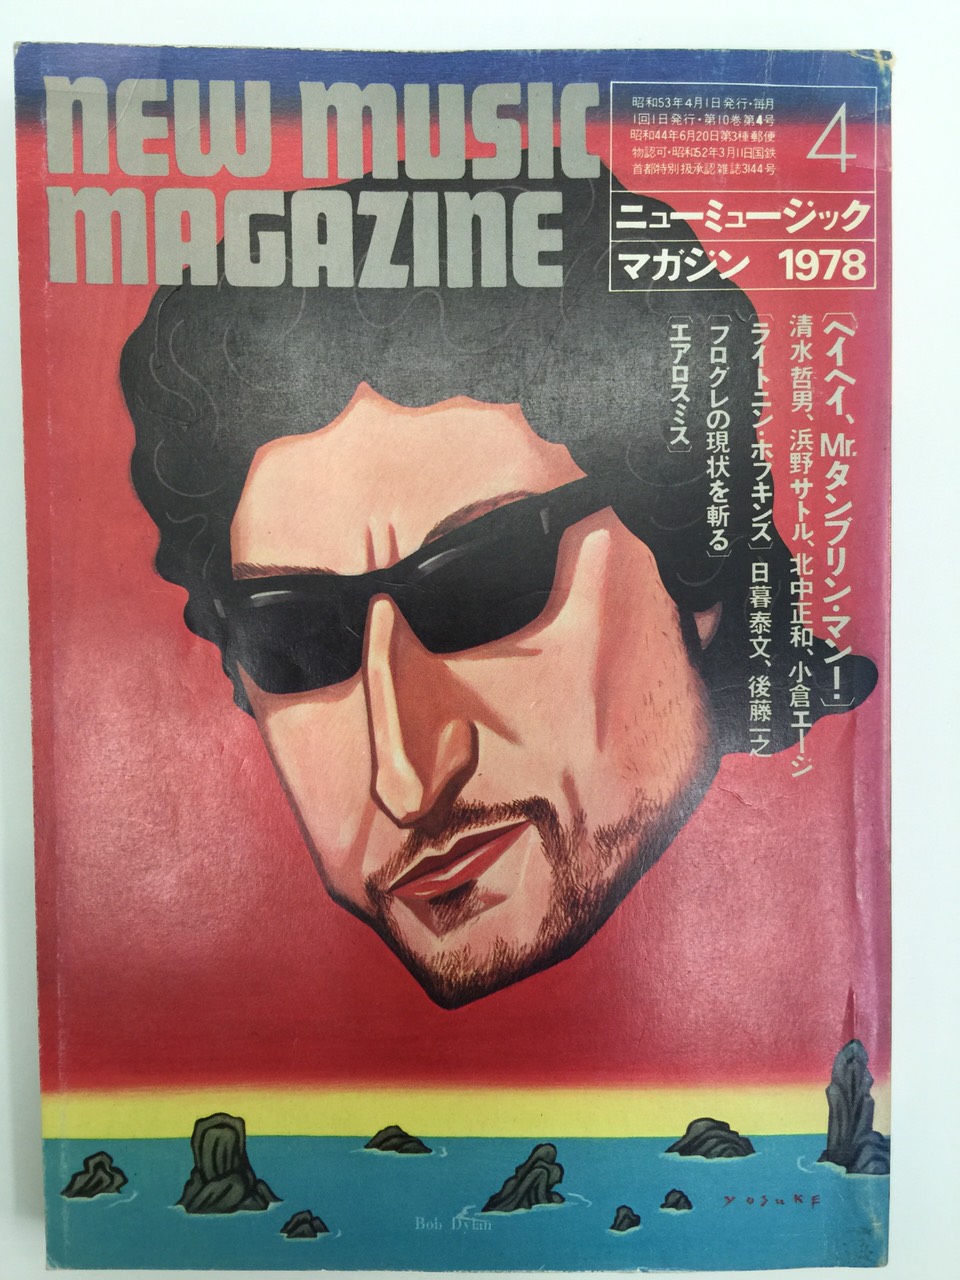 1978 new music magazine